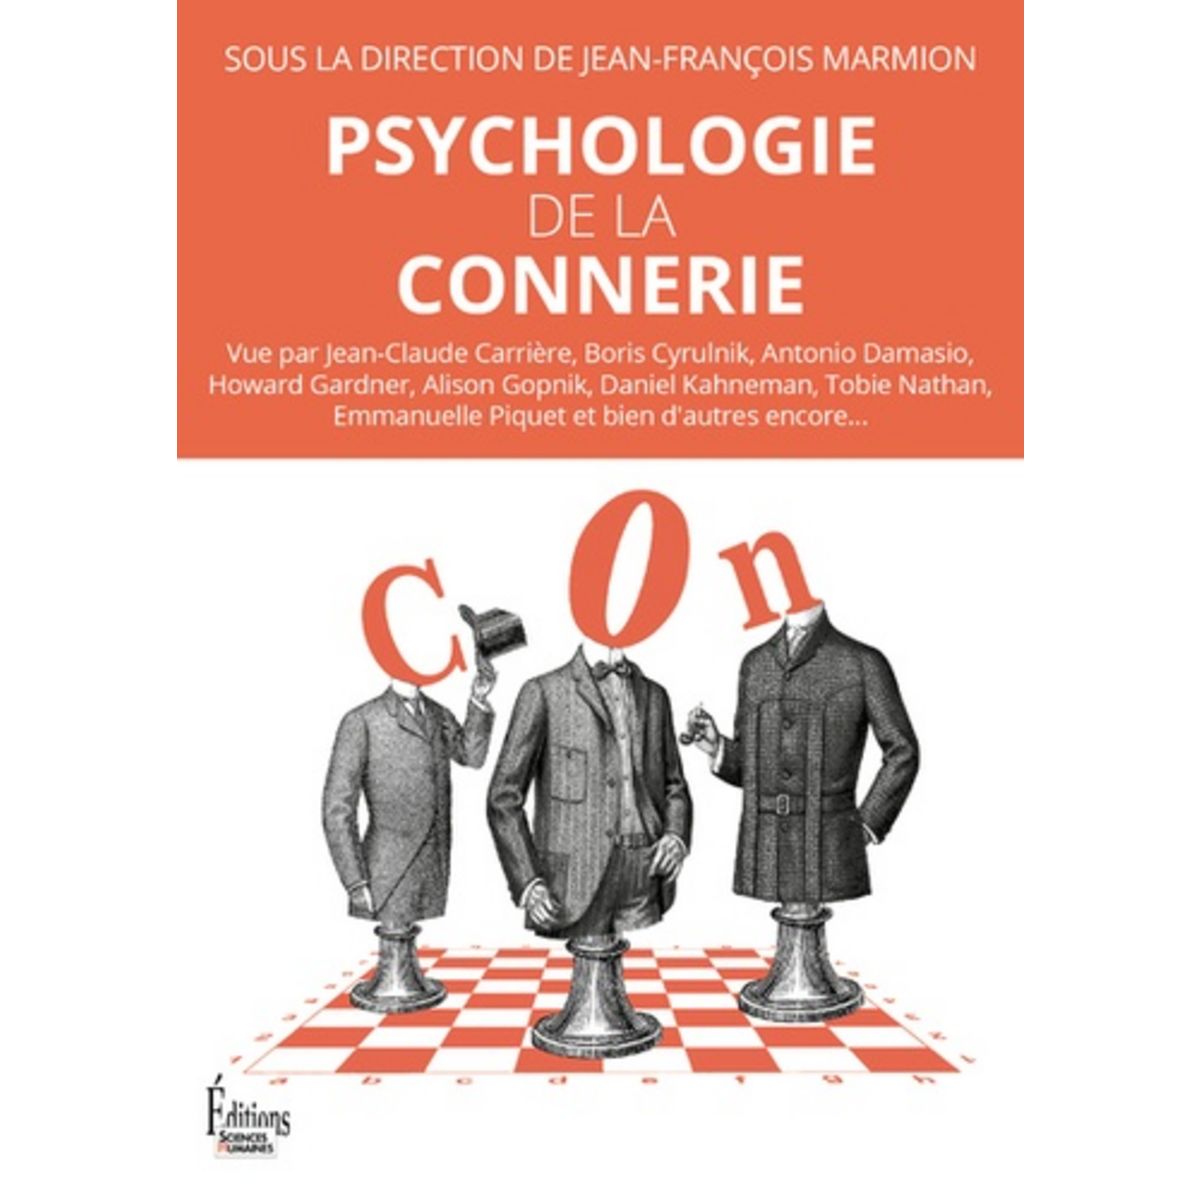  PSYCHOLOGIE DE LA CONNERIE, Marmion Jean-François